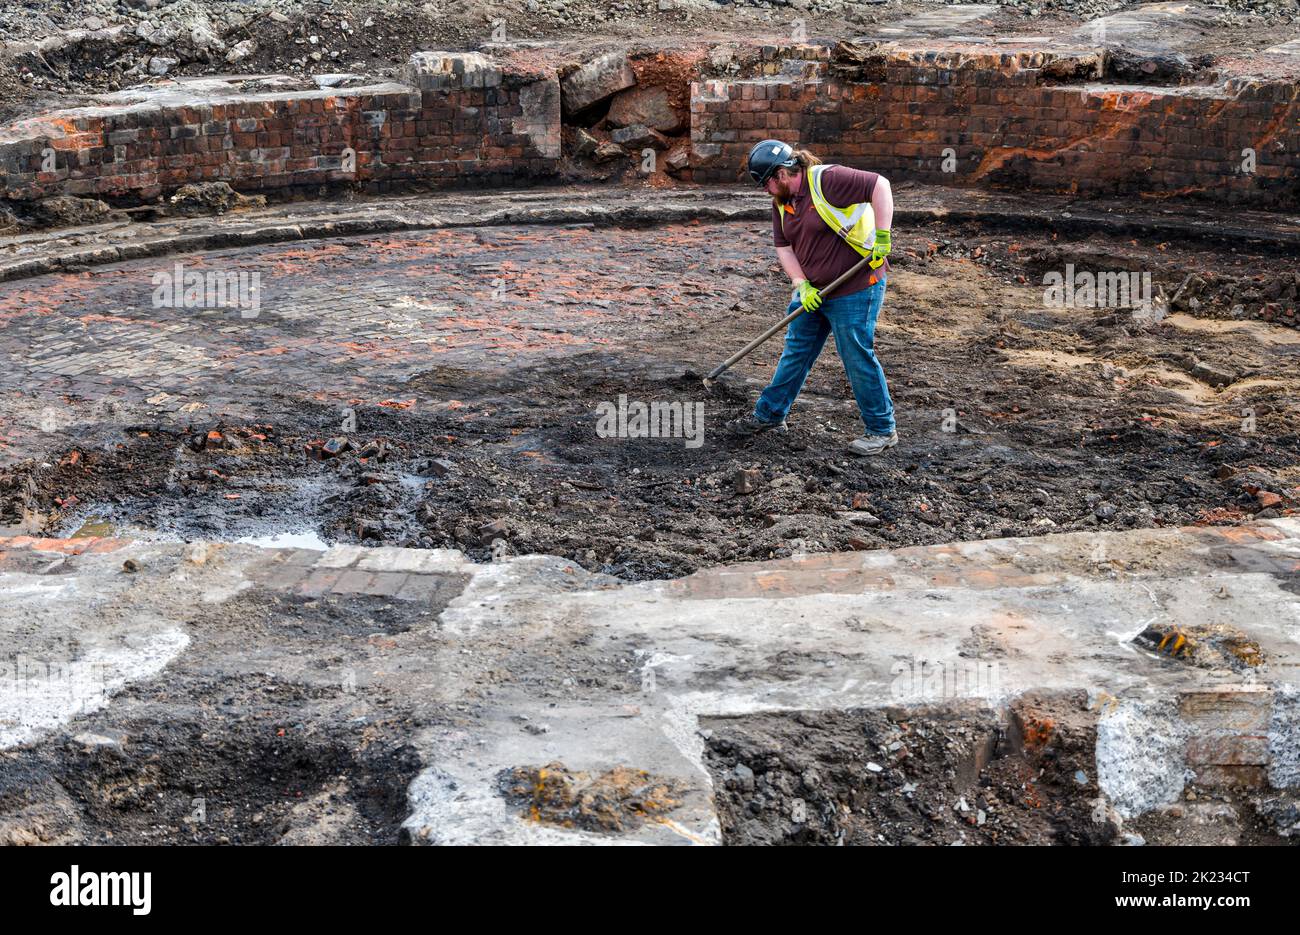 Archäologe, der an ausgegraben Resten von Drehscheibe, St. Margaret's Eisenbahndepot, Meadowbank, Edinburgh, Schottland, Großbritannien, arbeitet Stockfoto